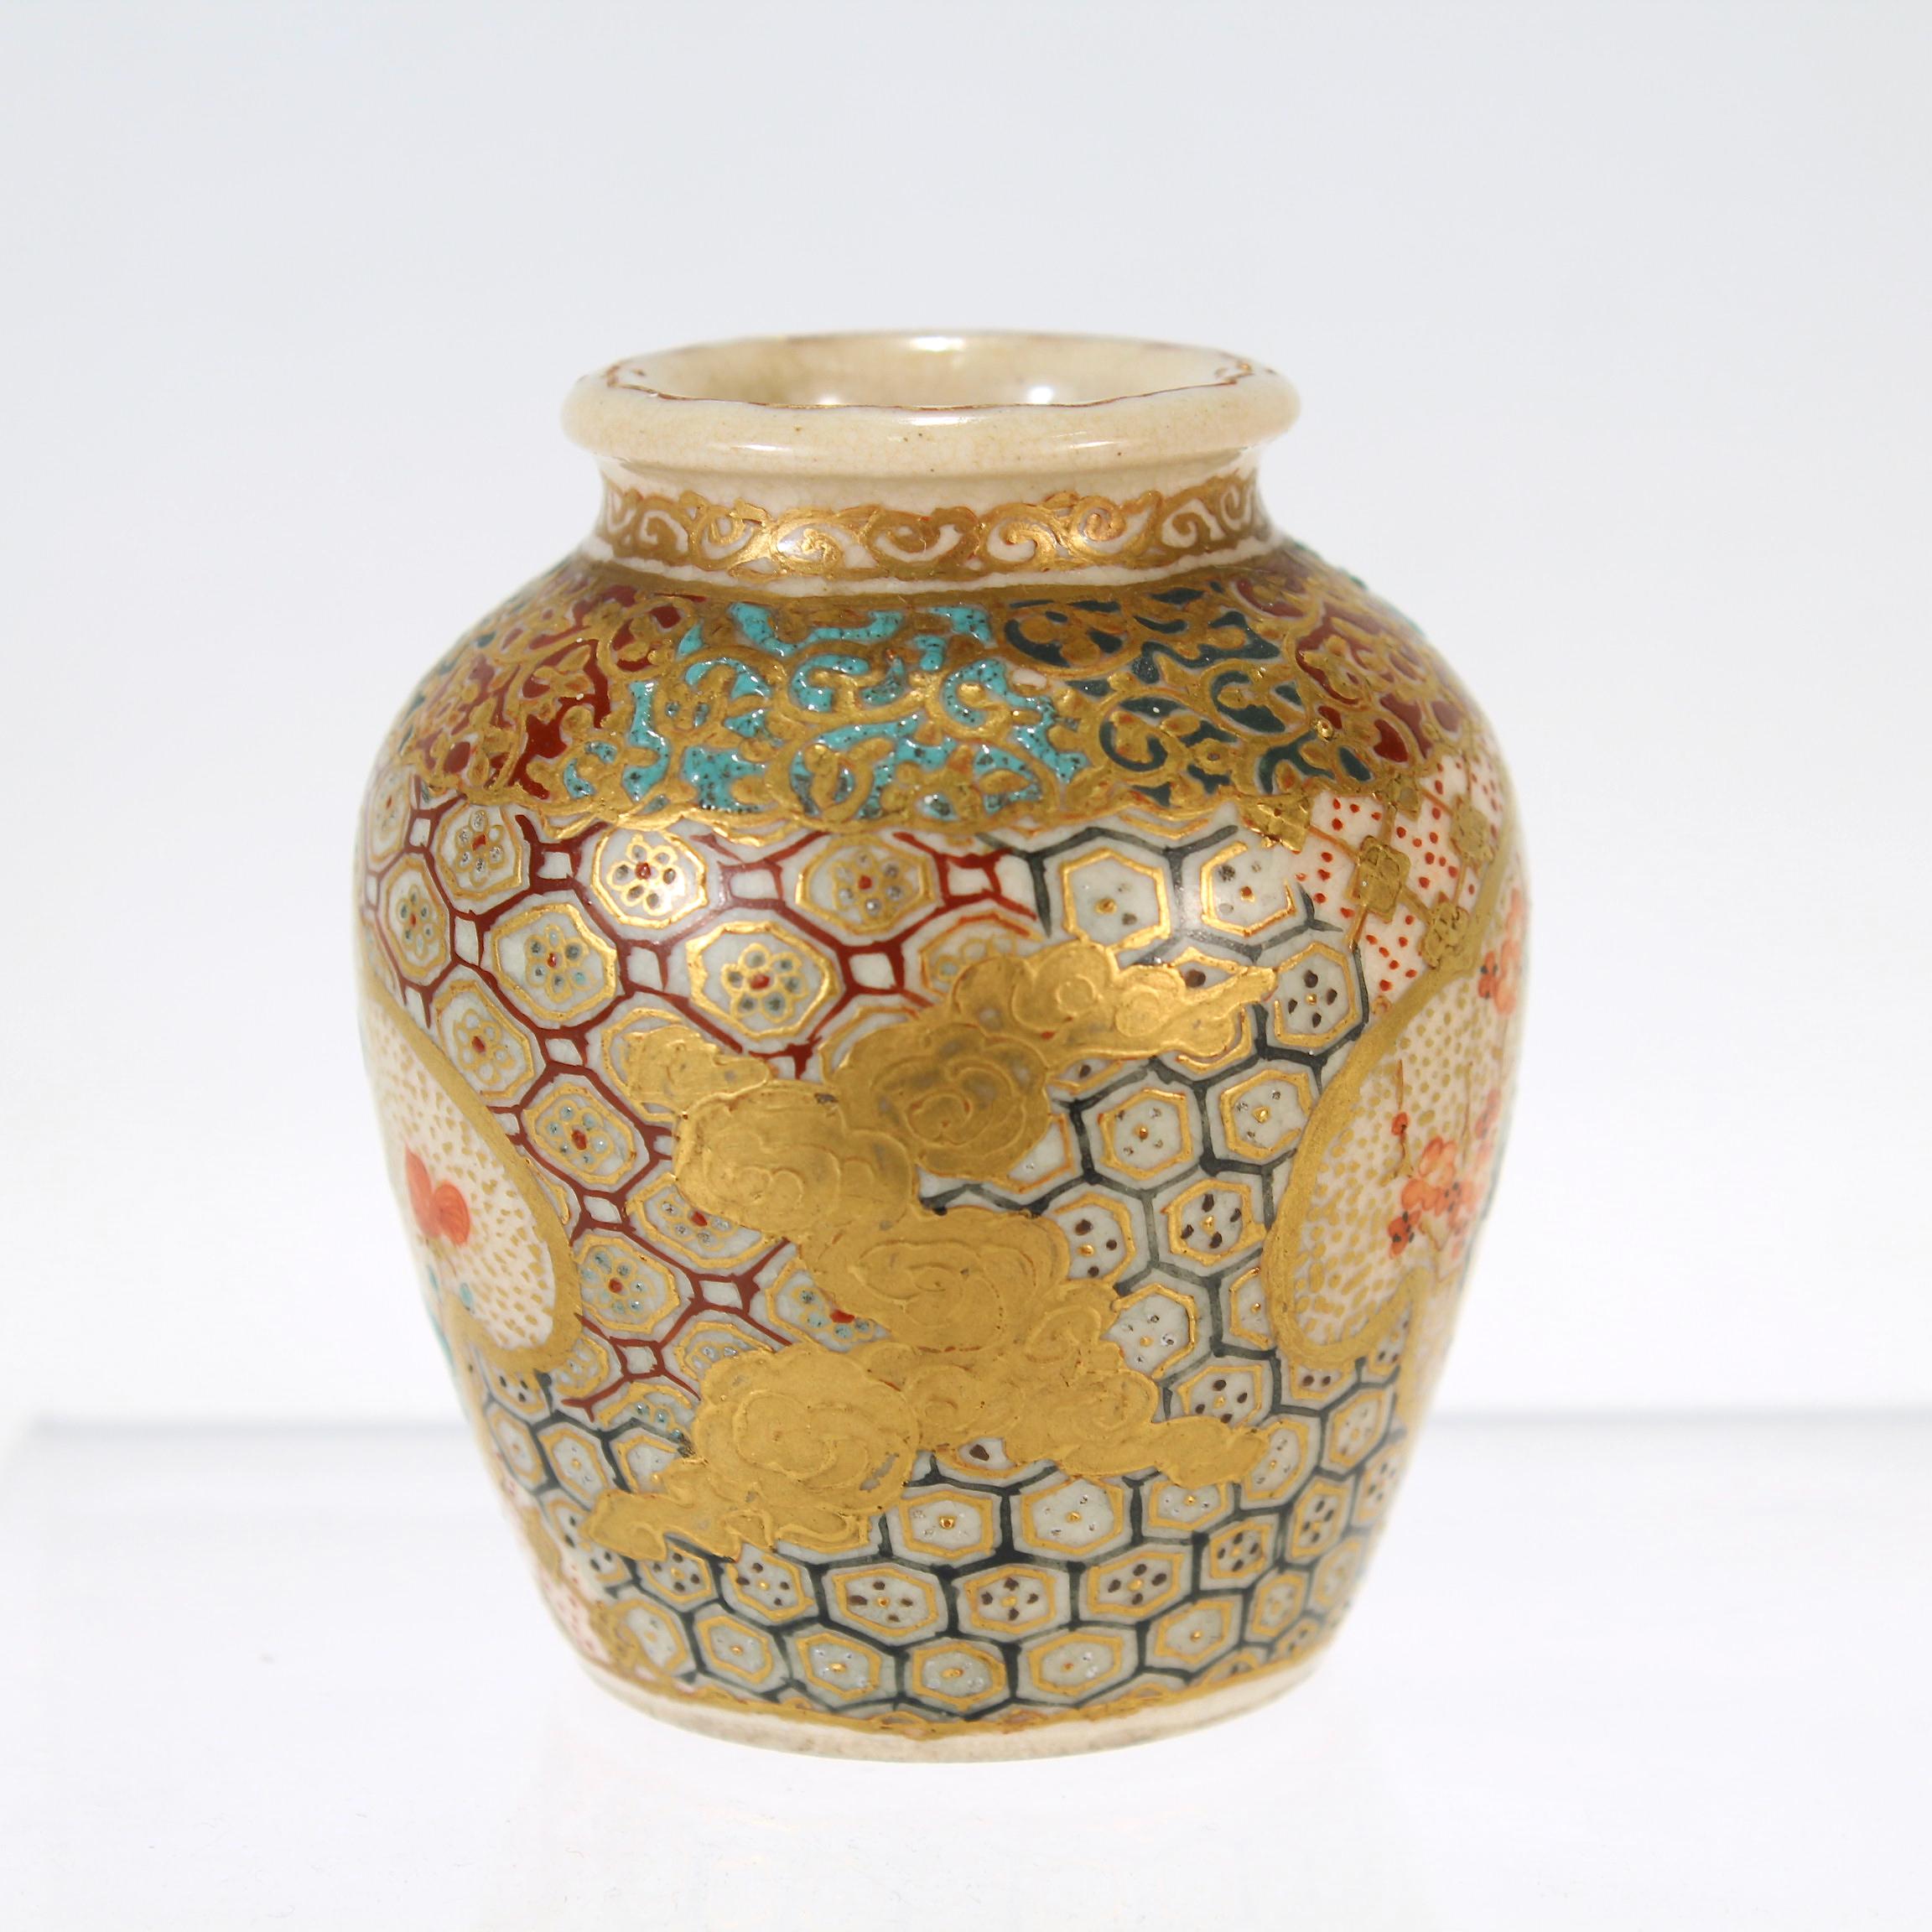 Vase de cabinet en poterie japonaise ancienne de Satsuma, de taille réduite.

Décoré de dorures et d'émaux en relief.

Le vase comporte deux cartouches décorés de fleurs rouges (peut-être des pivoines) et d'oiseaux.

L'embouchure du vase est